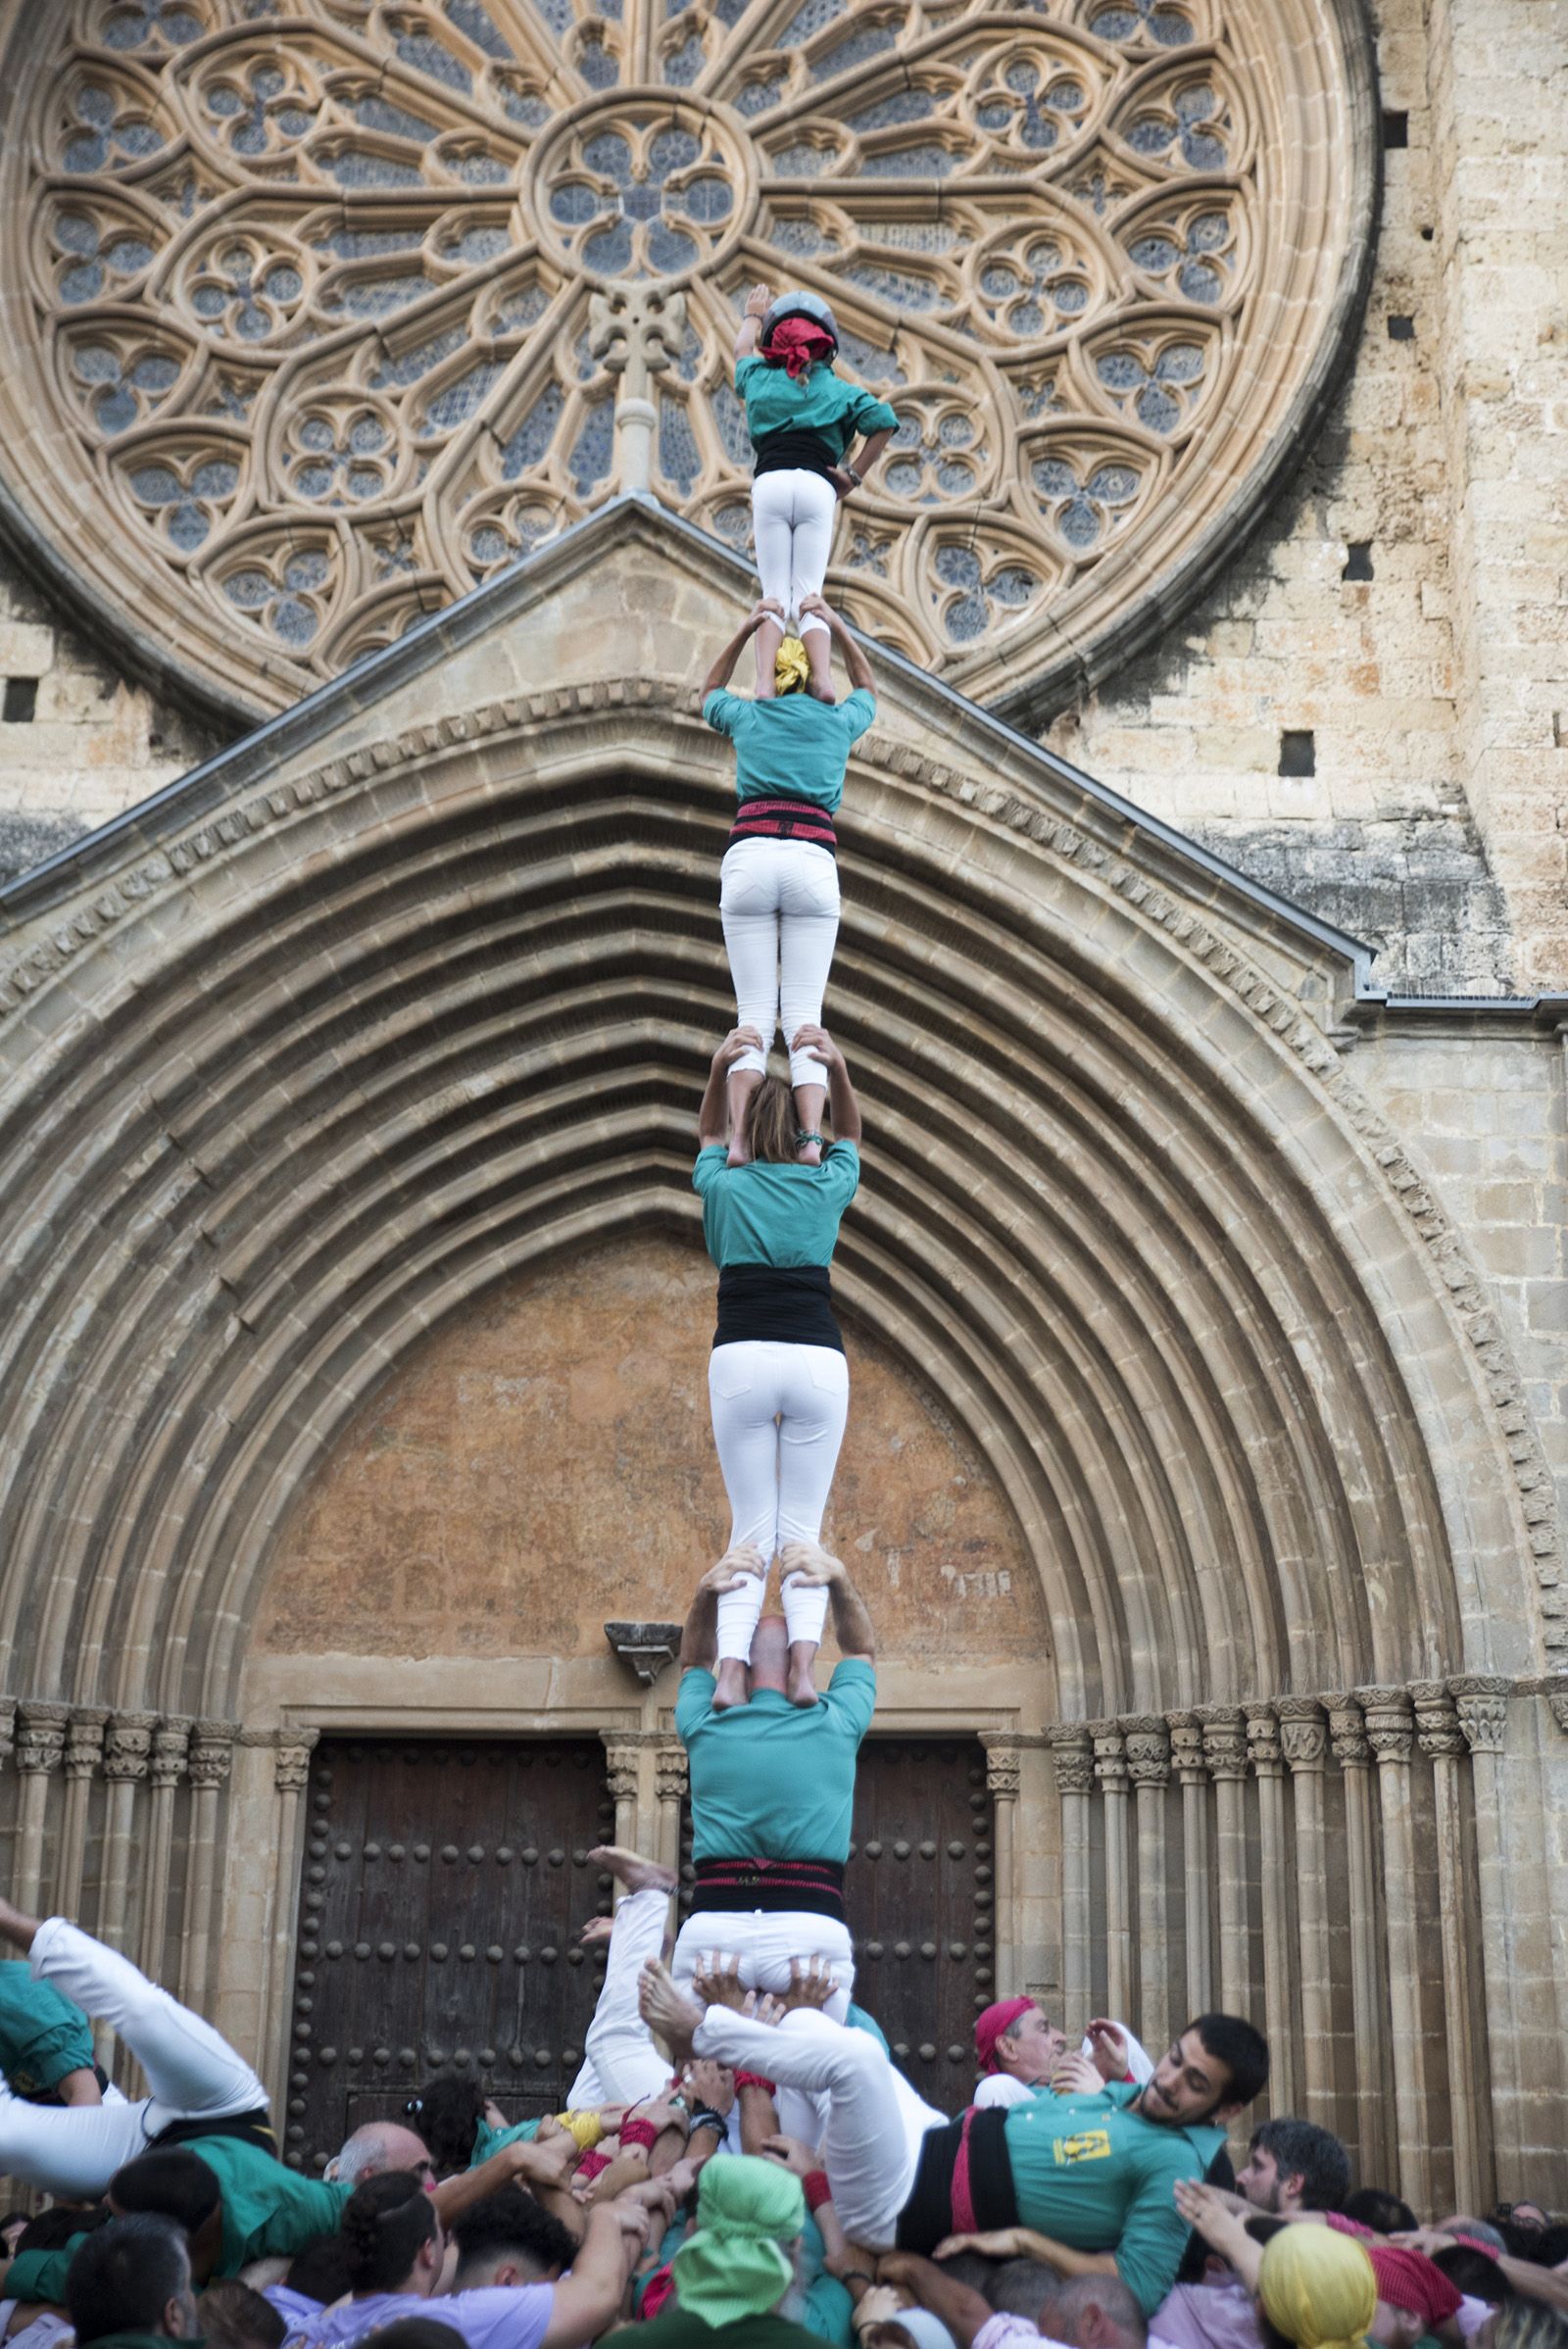 Els Castellers de Sant Cugat estrenen la Diada de la Llotgeta, que agafa el relleu a la Diada de Sant Cugat. FOTO: Bernat Millet